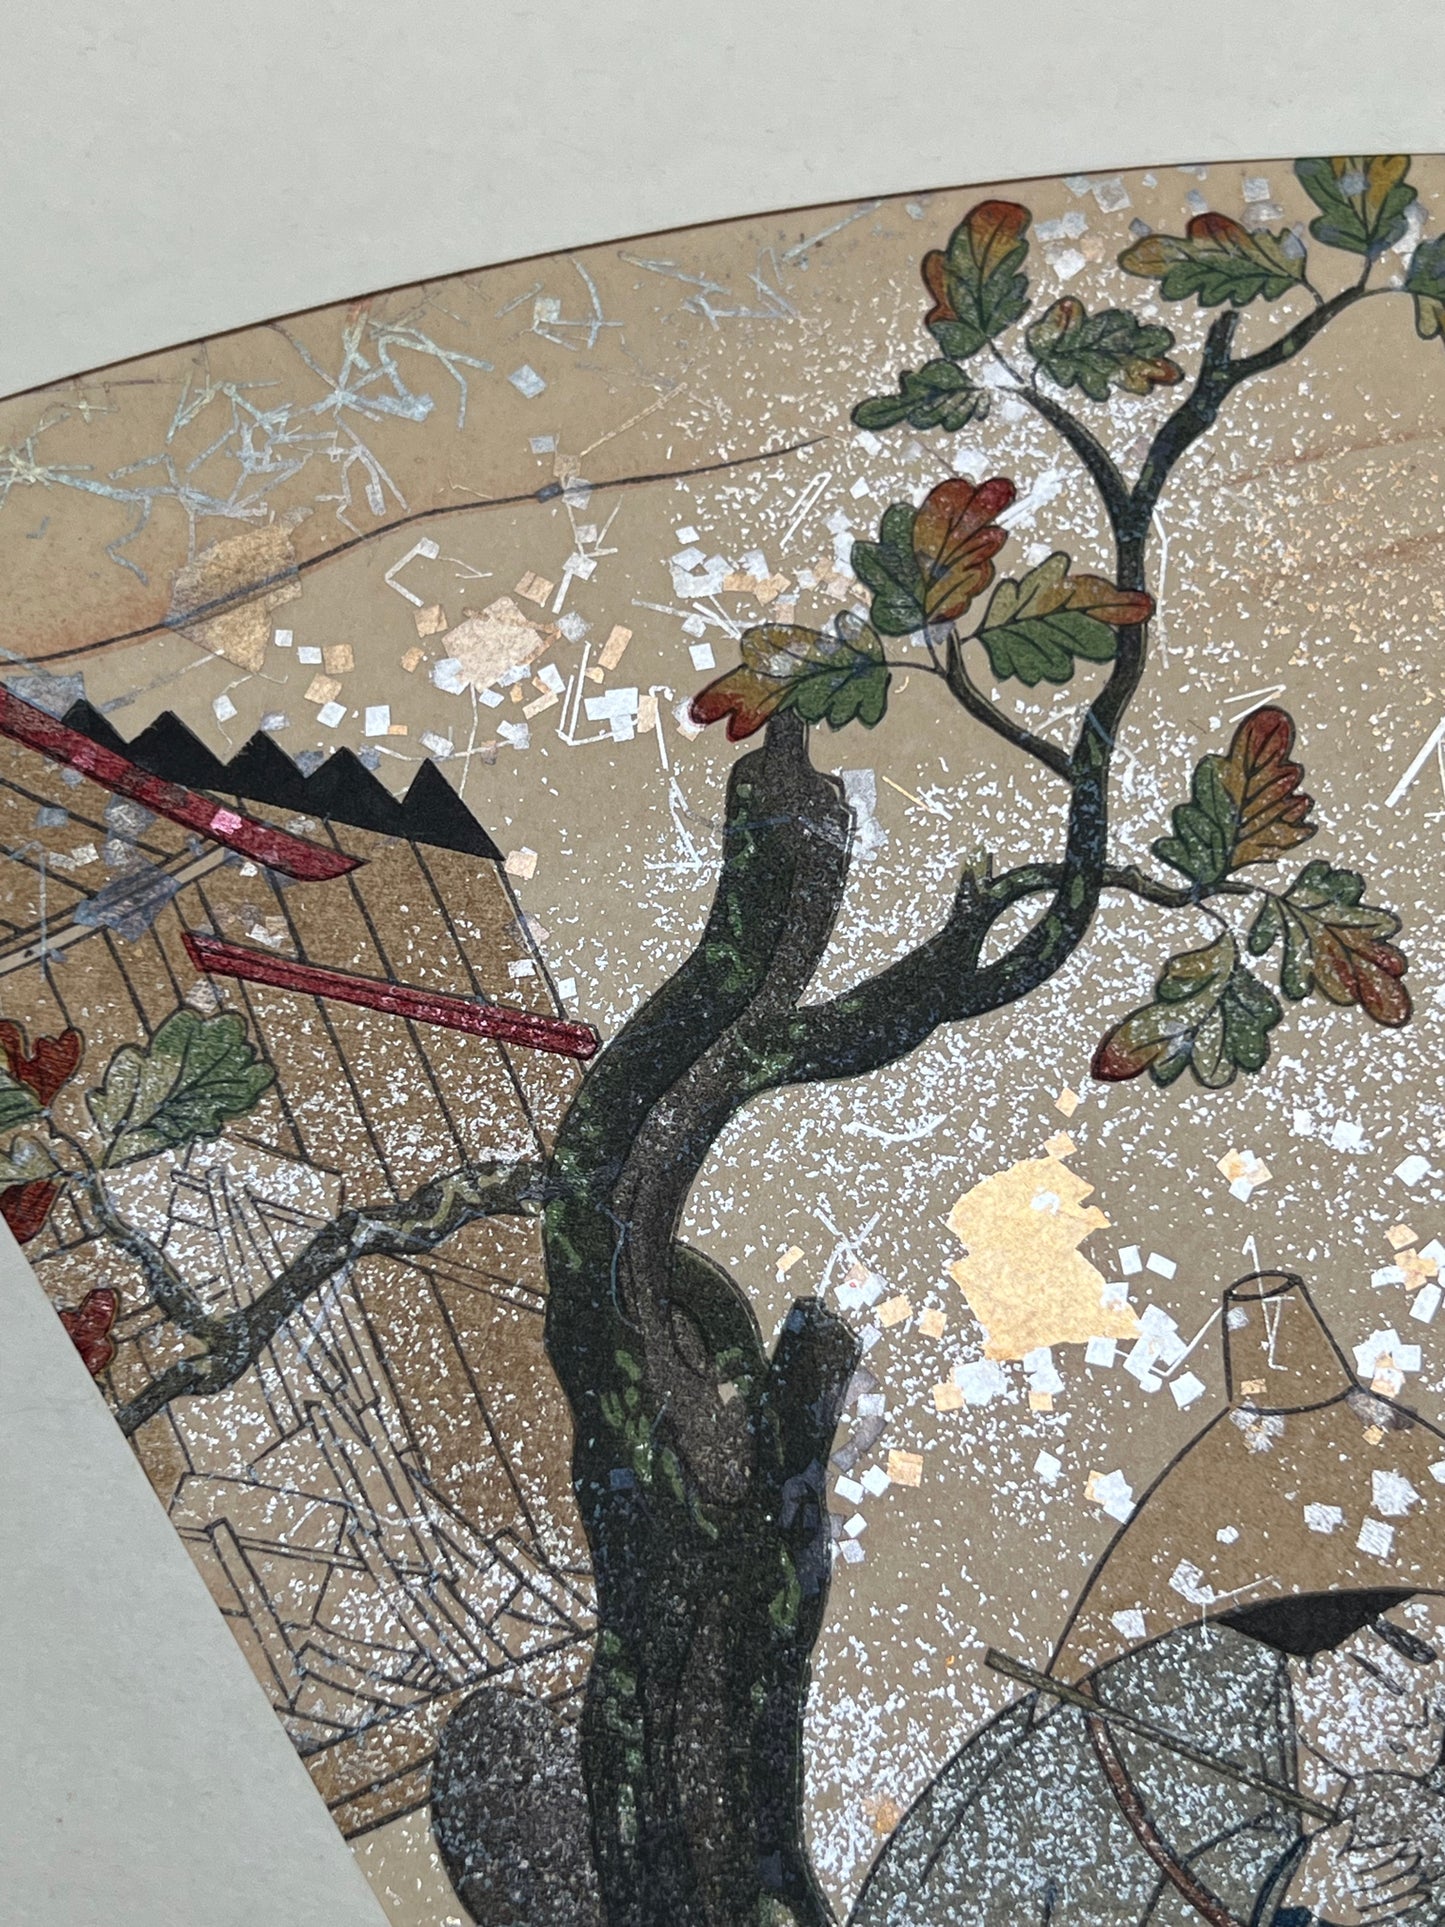 Estampe japonaise en forme d'éventail parsemée de fragments d'or et d'argent, gros plan chêne, feuilles d'automne, clôture en bois, fragments scintillants.